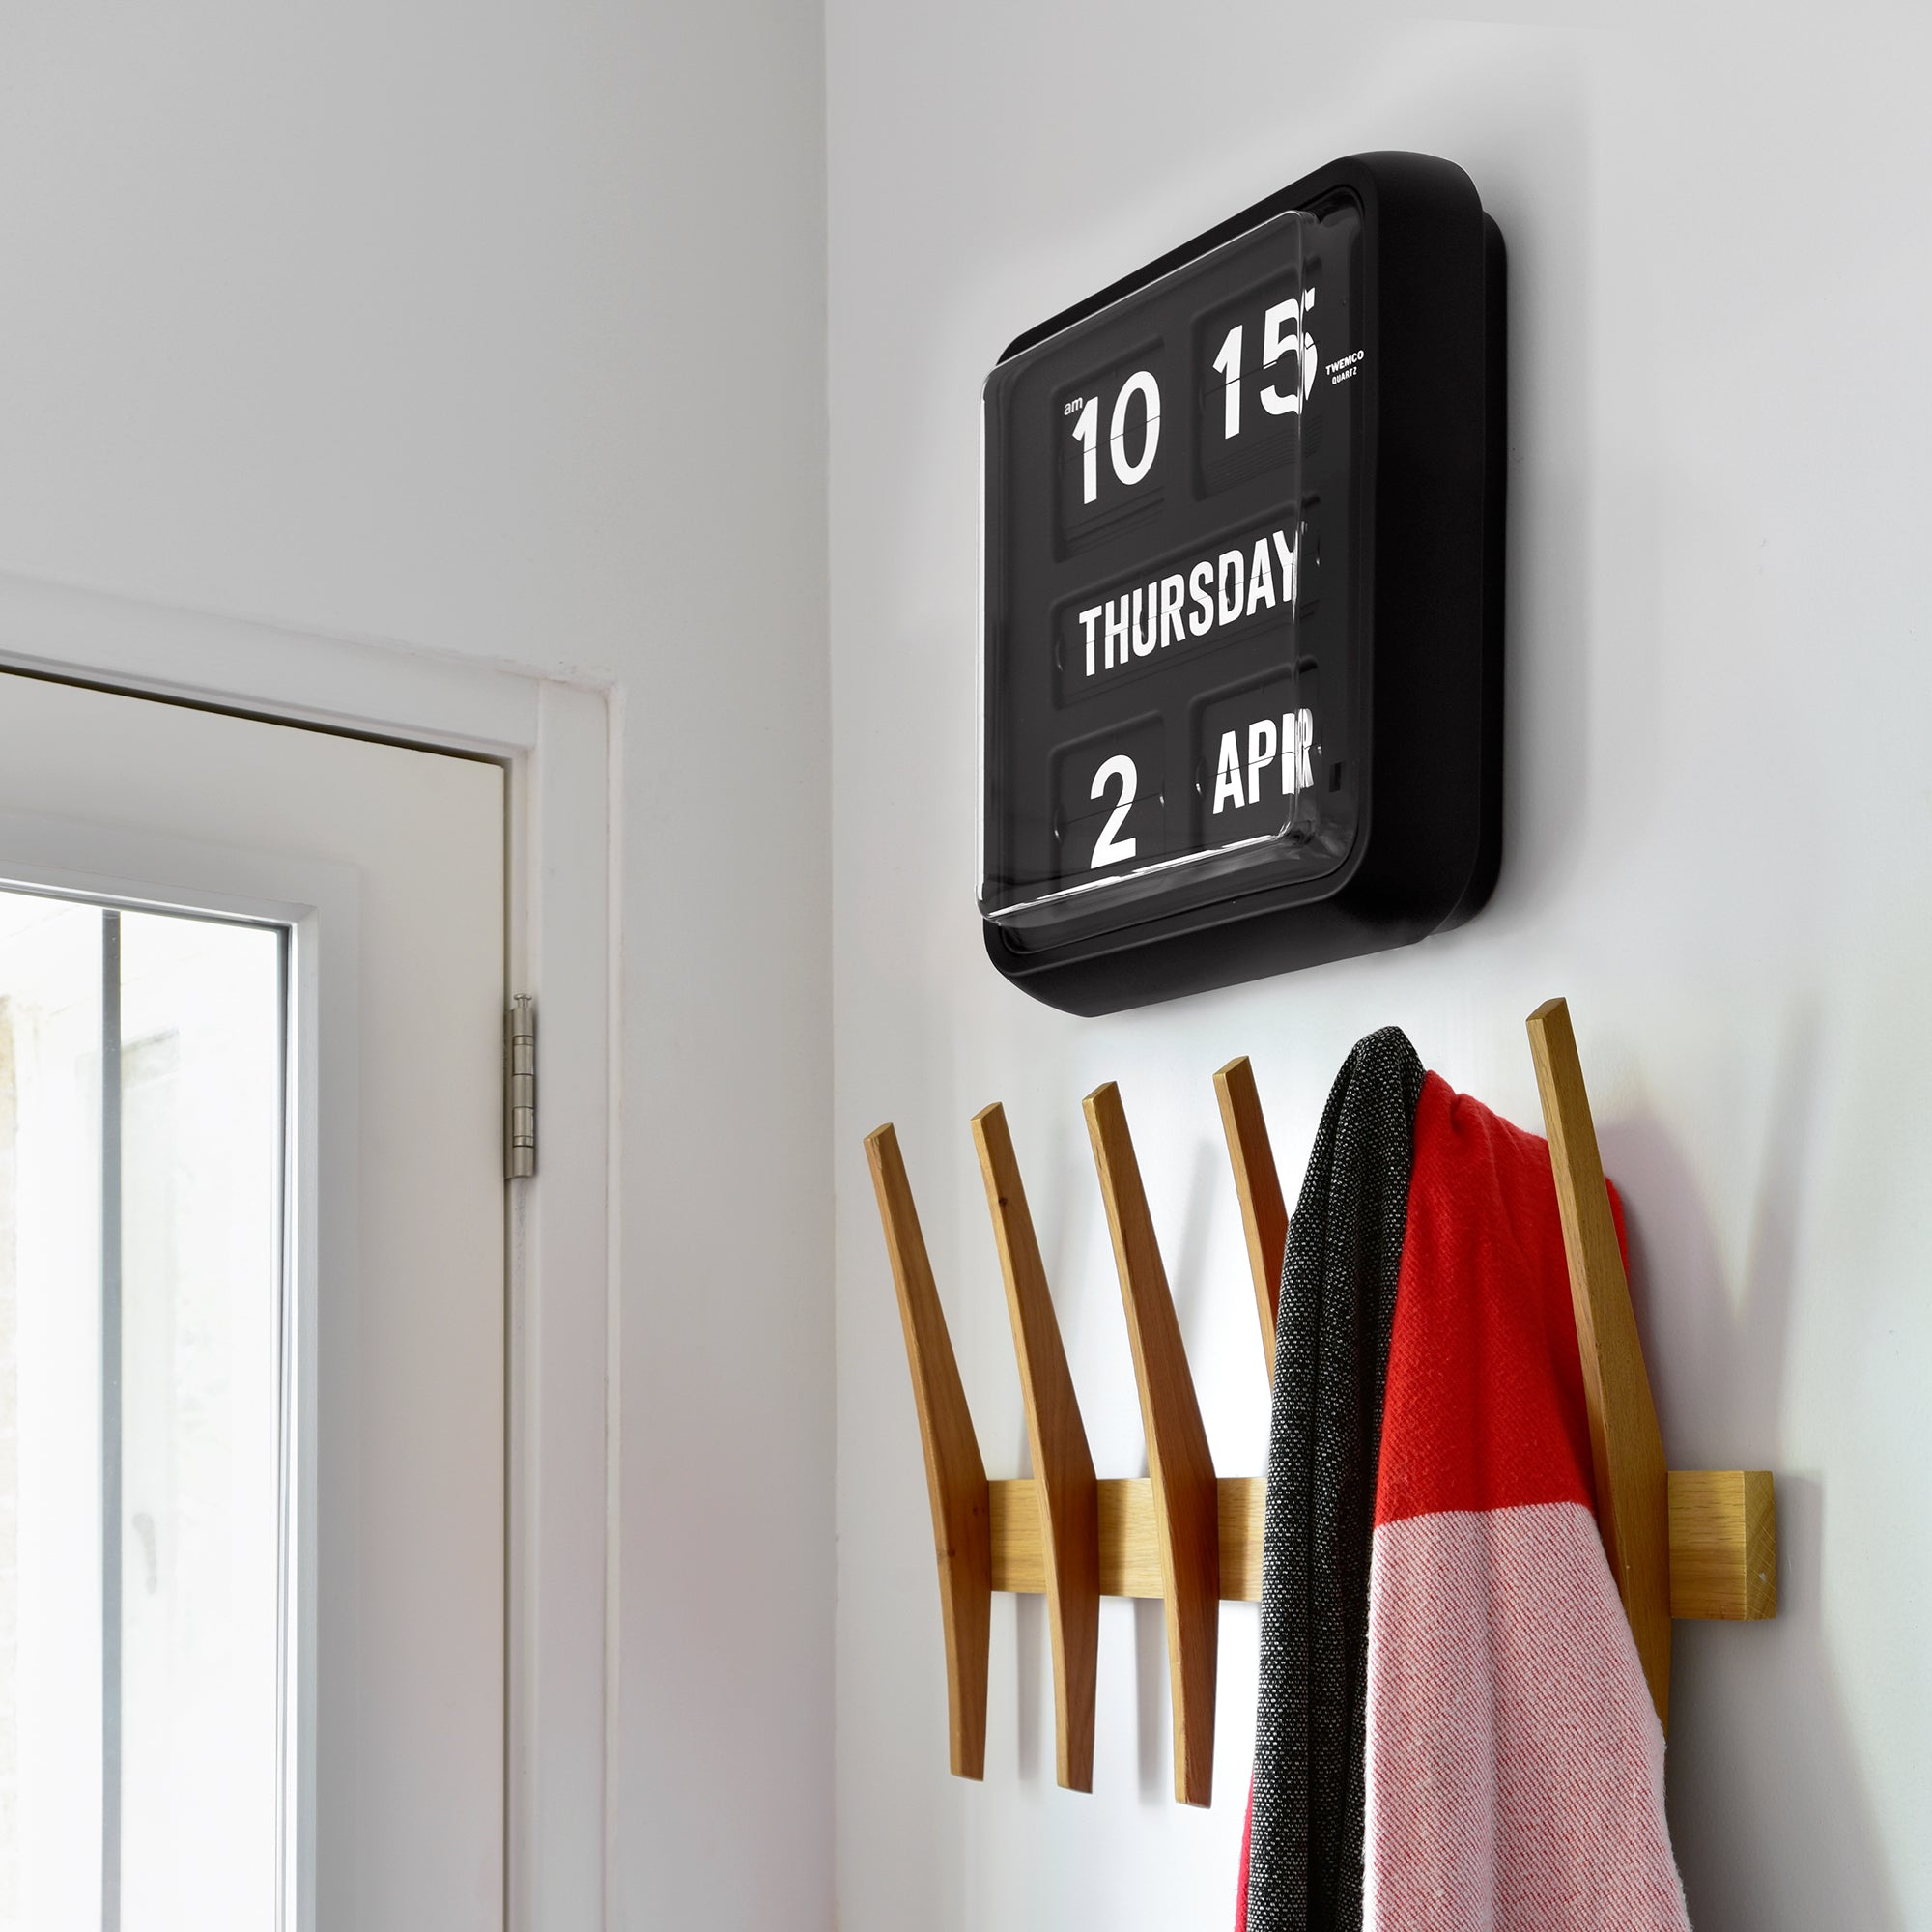 Twemco BQ-170 Black Calendar Flip Wall Clock